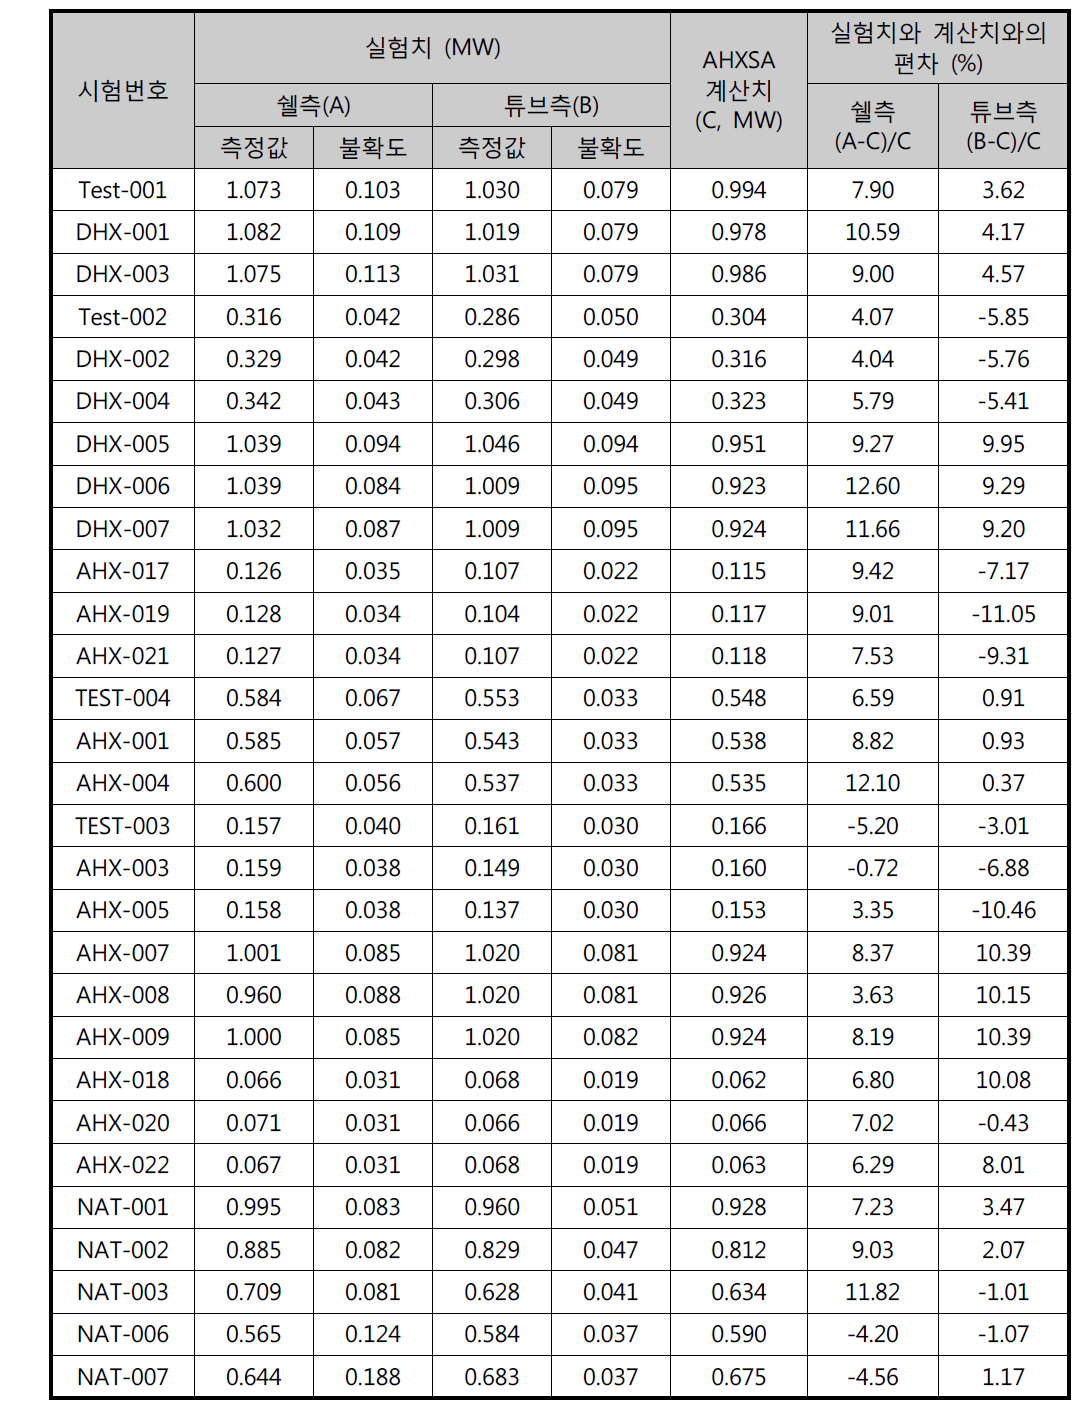 AHXSA 코드 계산값과 실험 결과의 전열량 비교